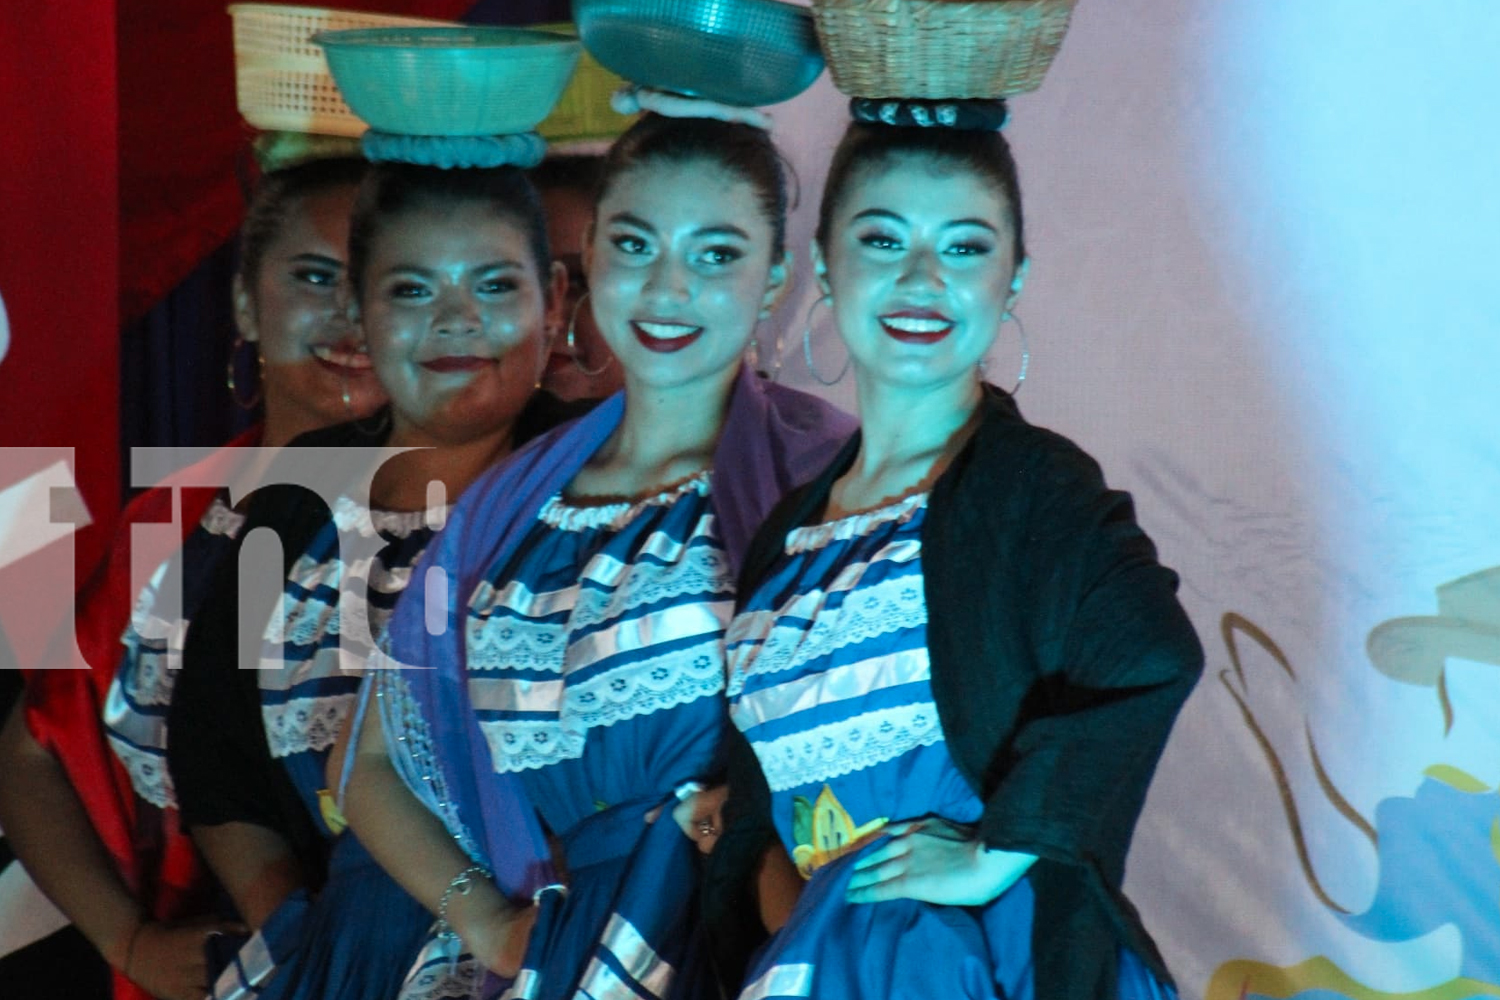 Foto: Talento y arte creativo durante festival de trajes Folklóricos en Madriz/TN8